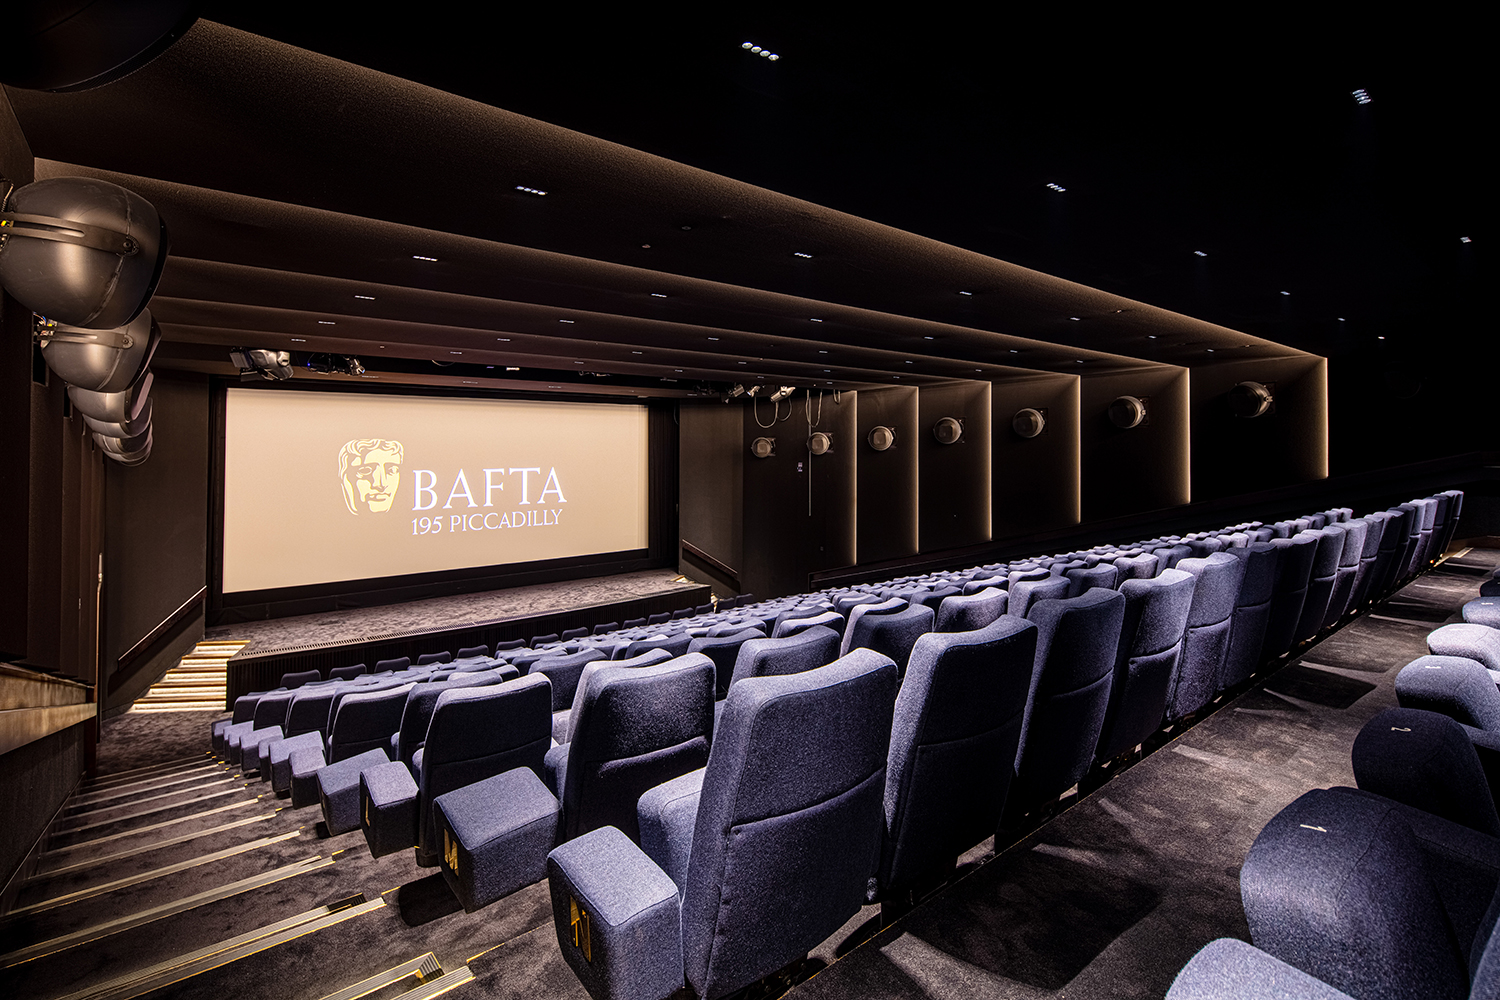 Princess Anne Theater in der BAFTA-Zentrale in London